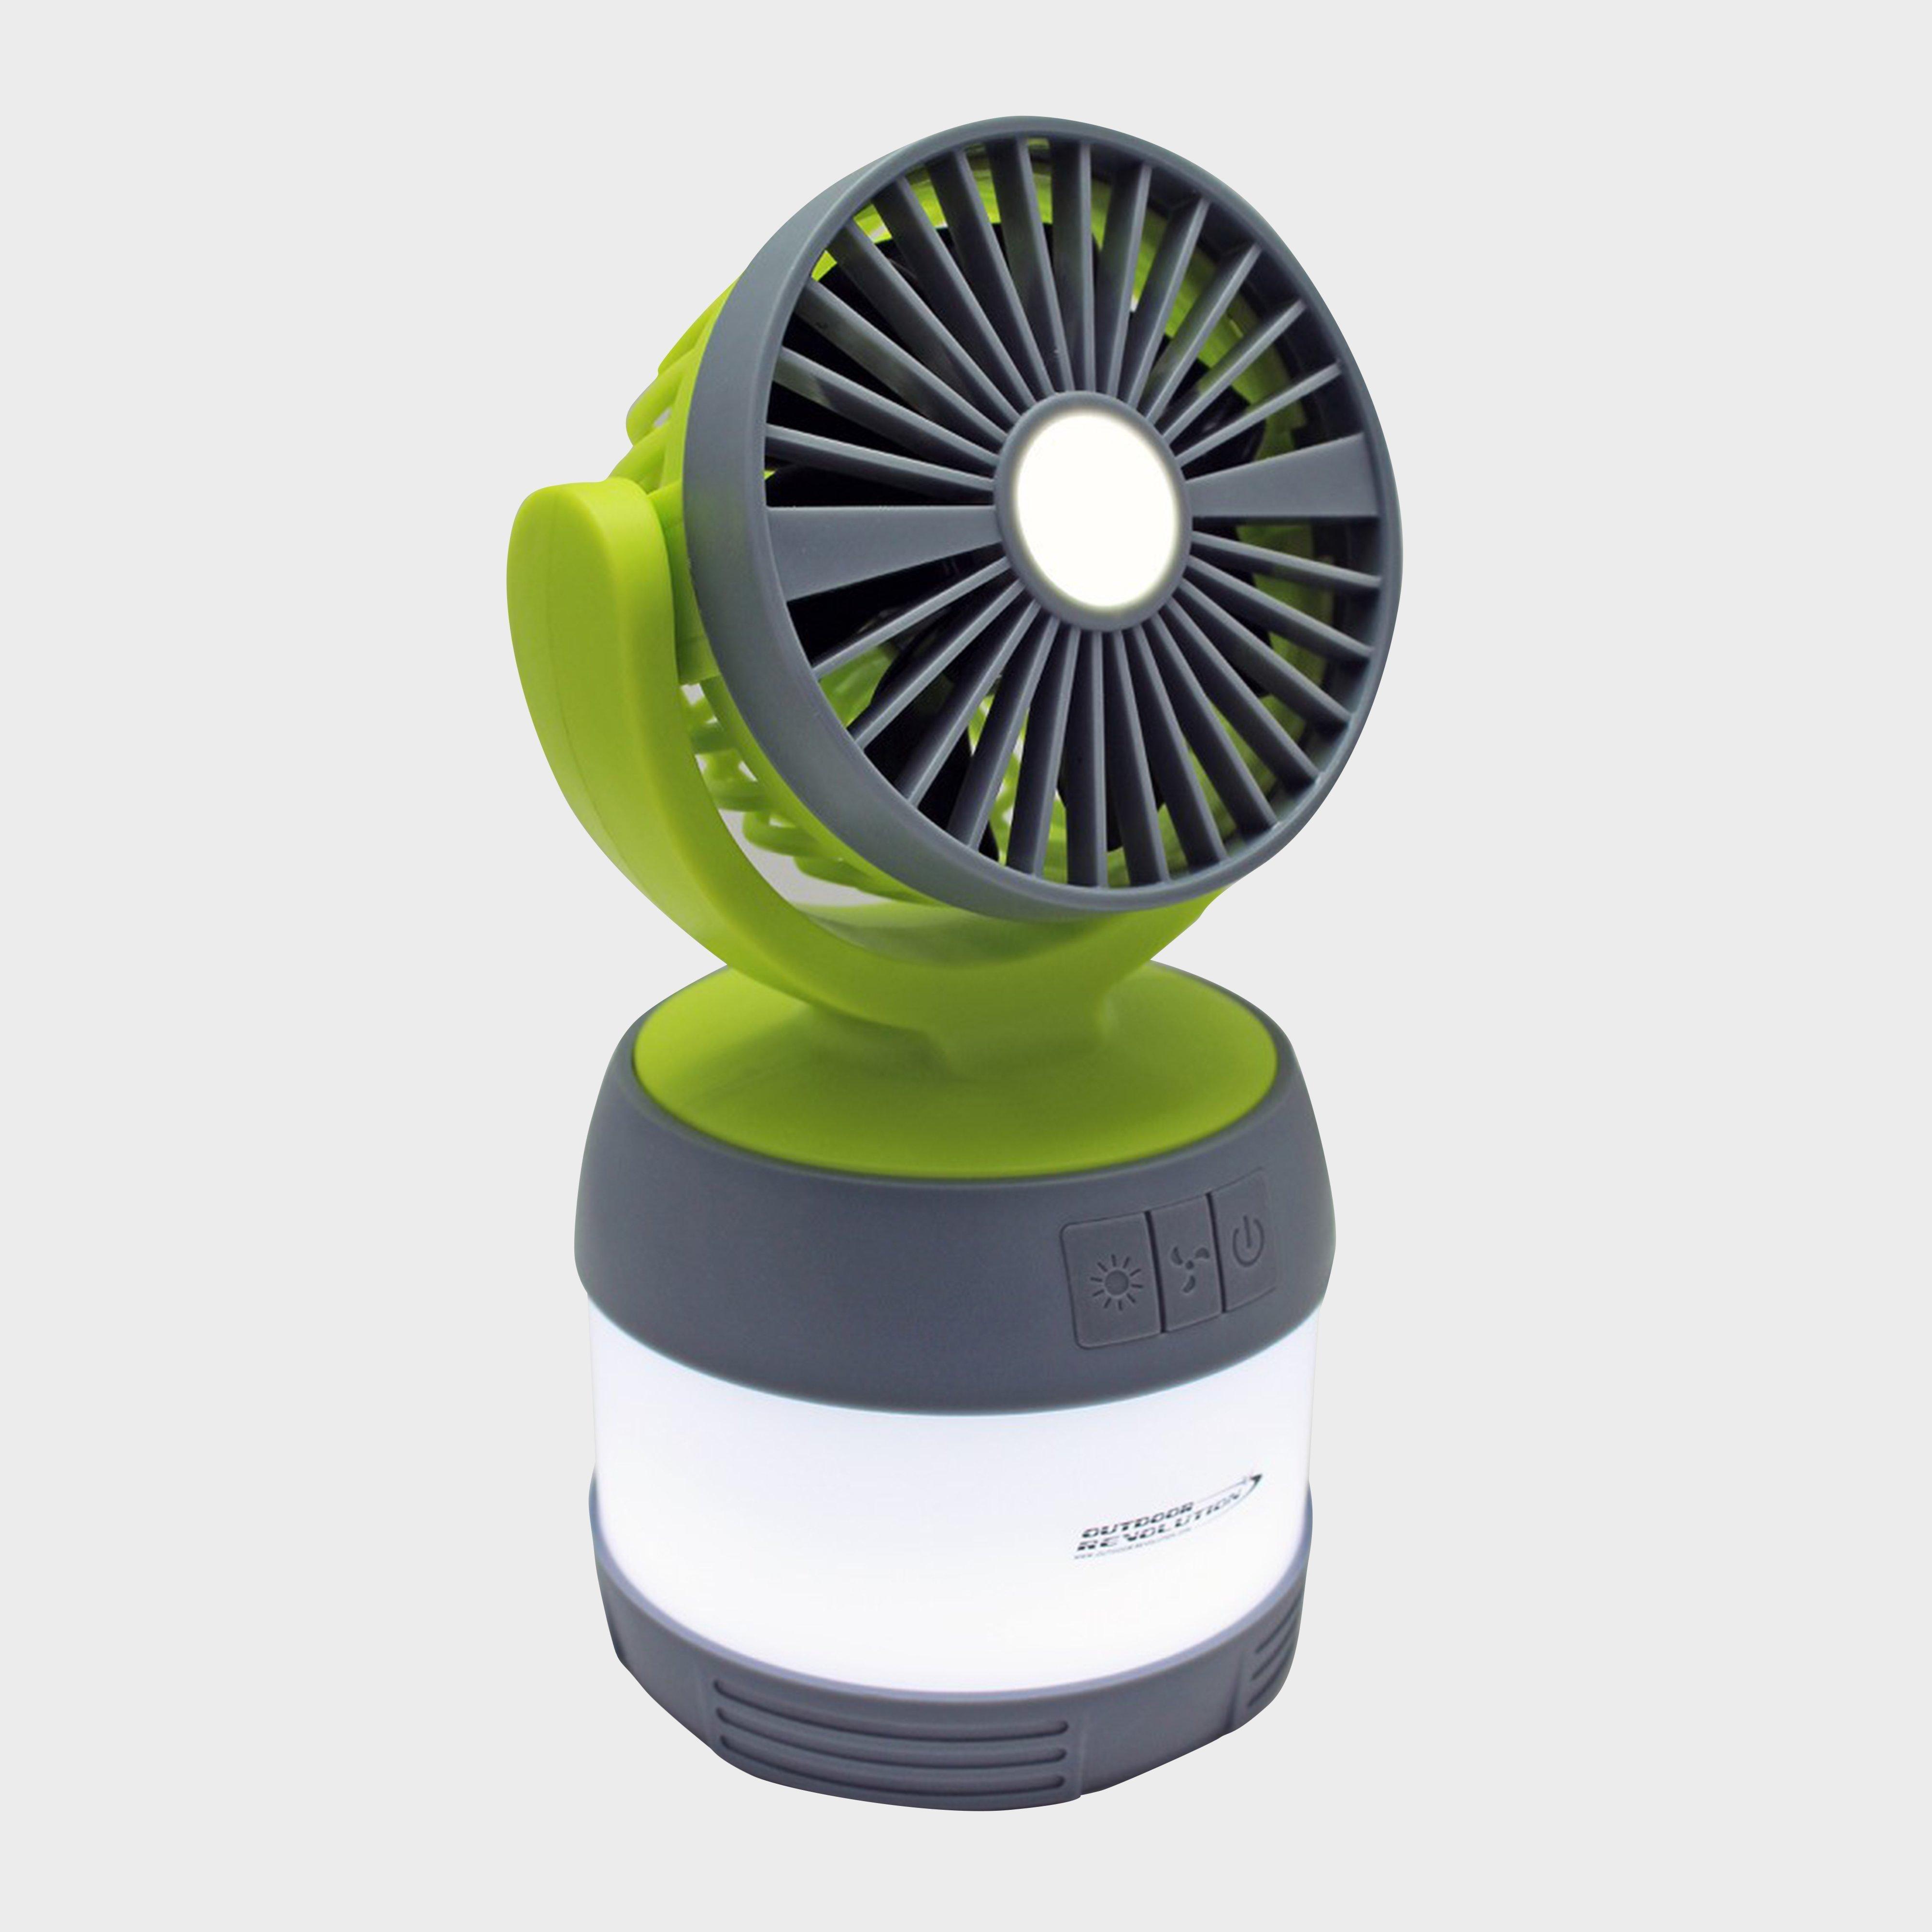 Outdoor Revolution 3-in-1 Lumi-fan Lantern - Green/fan  Green/fan